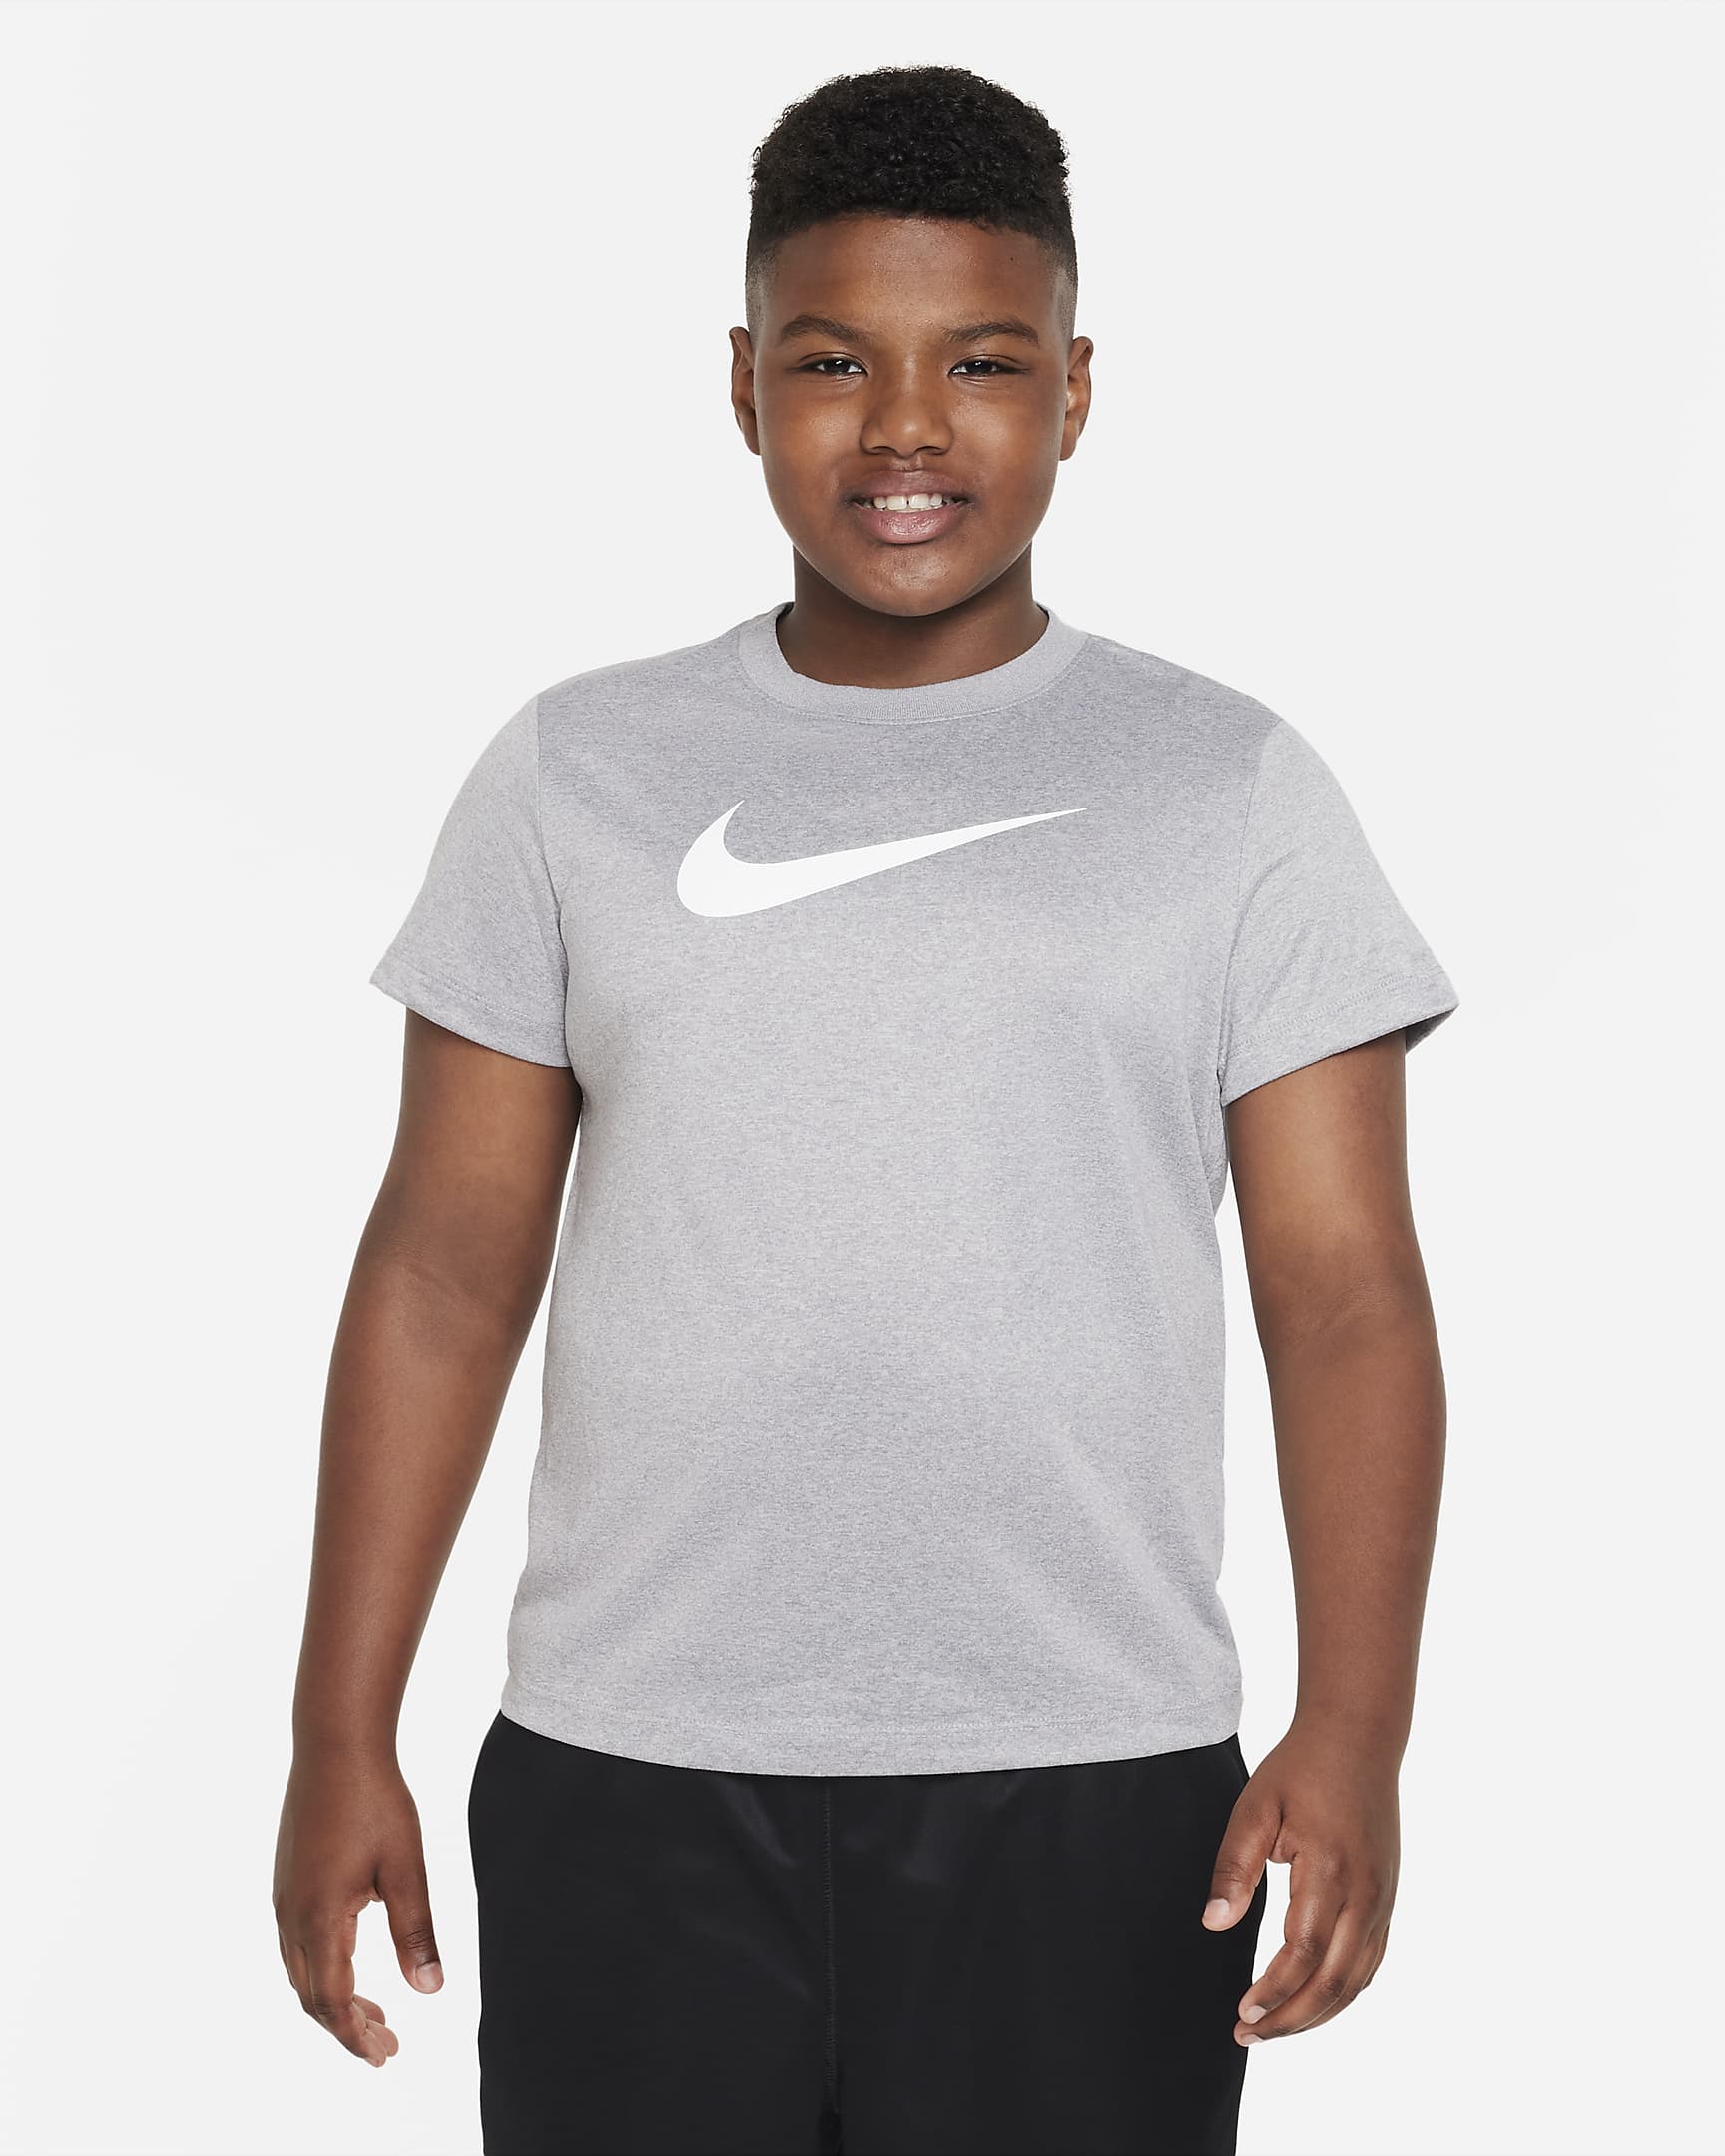 Nike Dri-FIT Big Kids' (Boys') Training T-Shirt (Extended Size). Nike.com